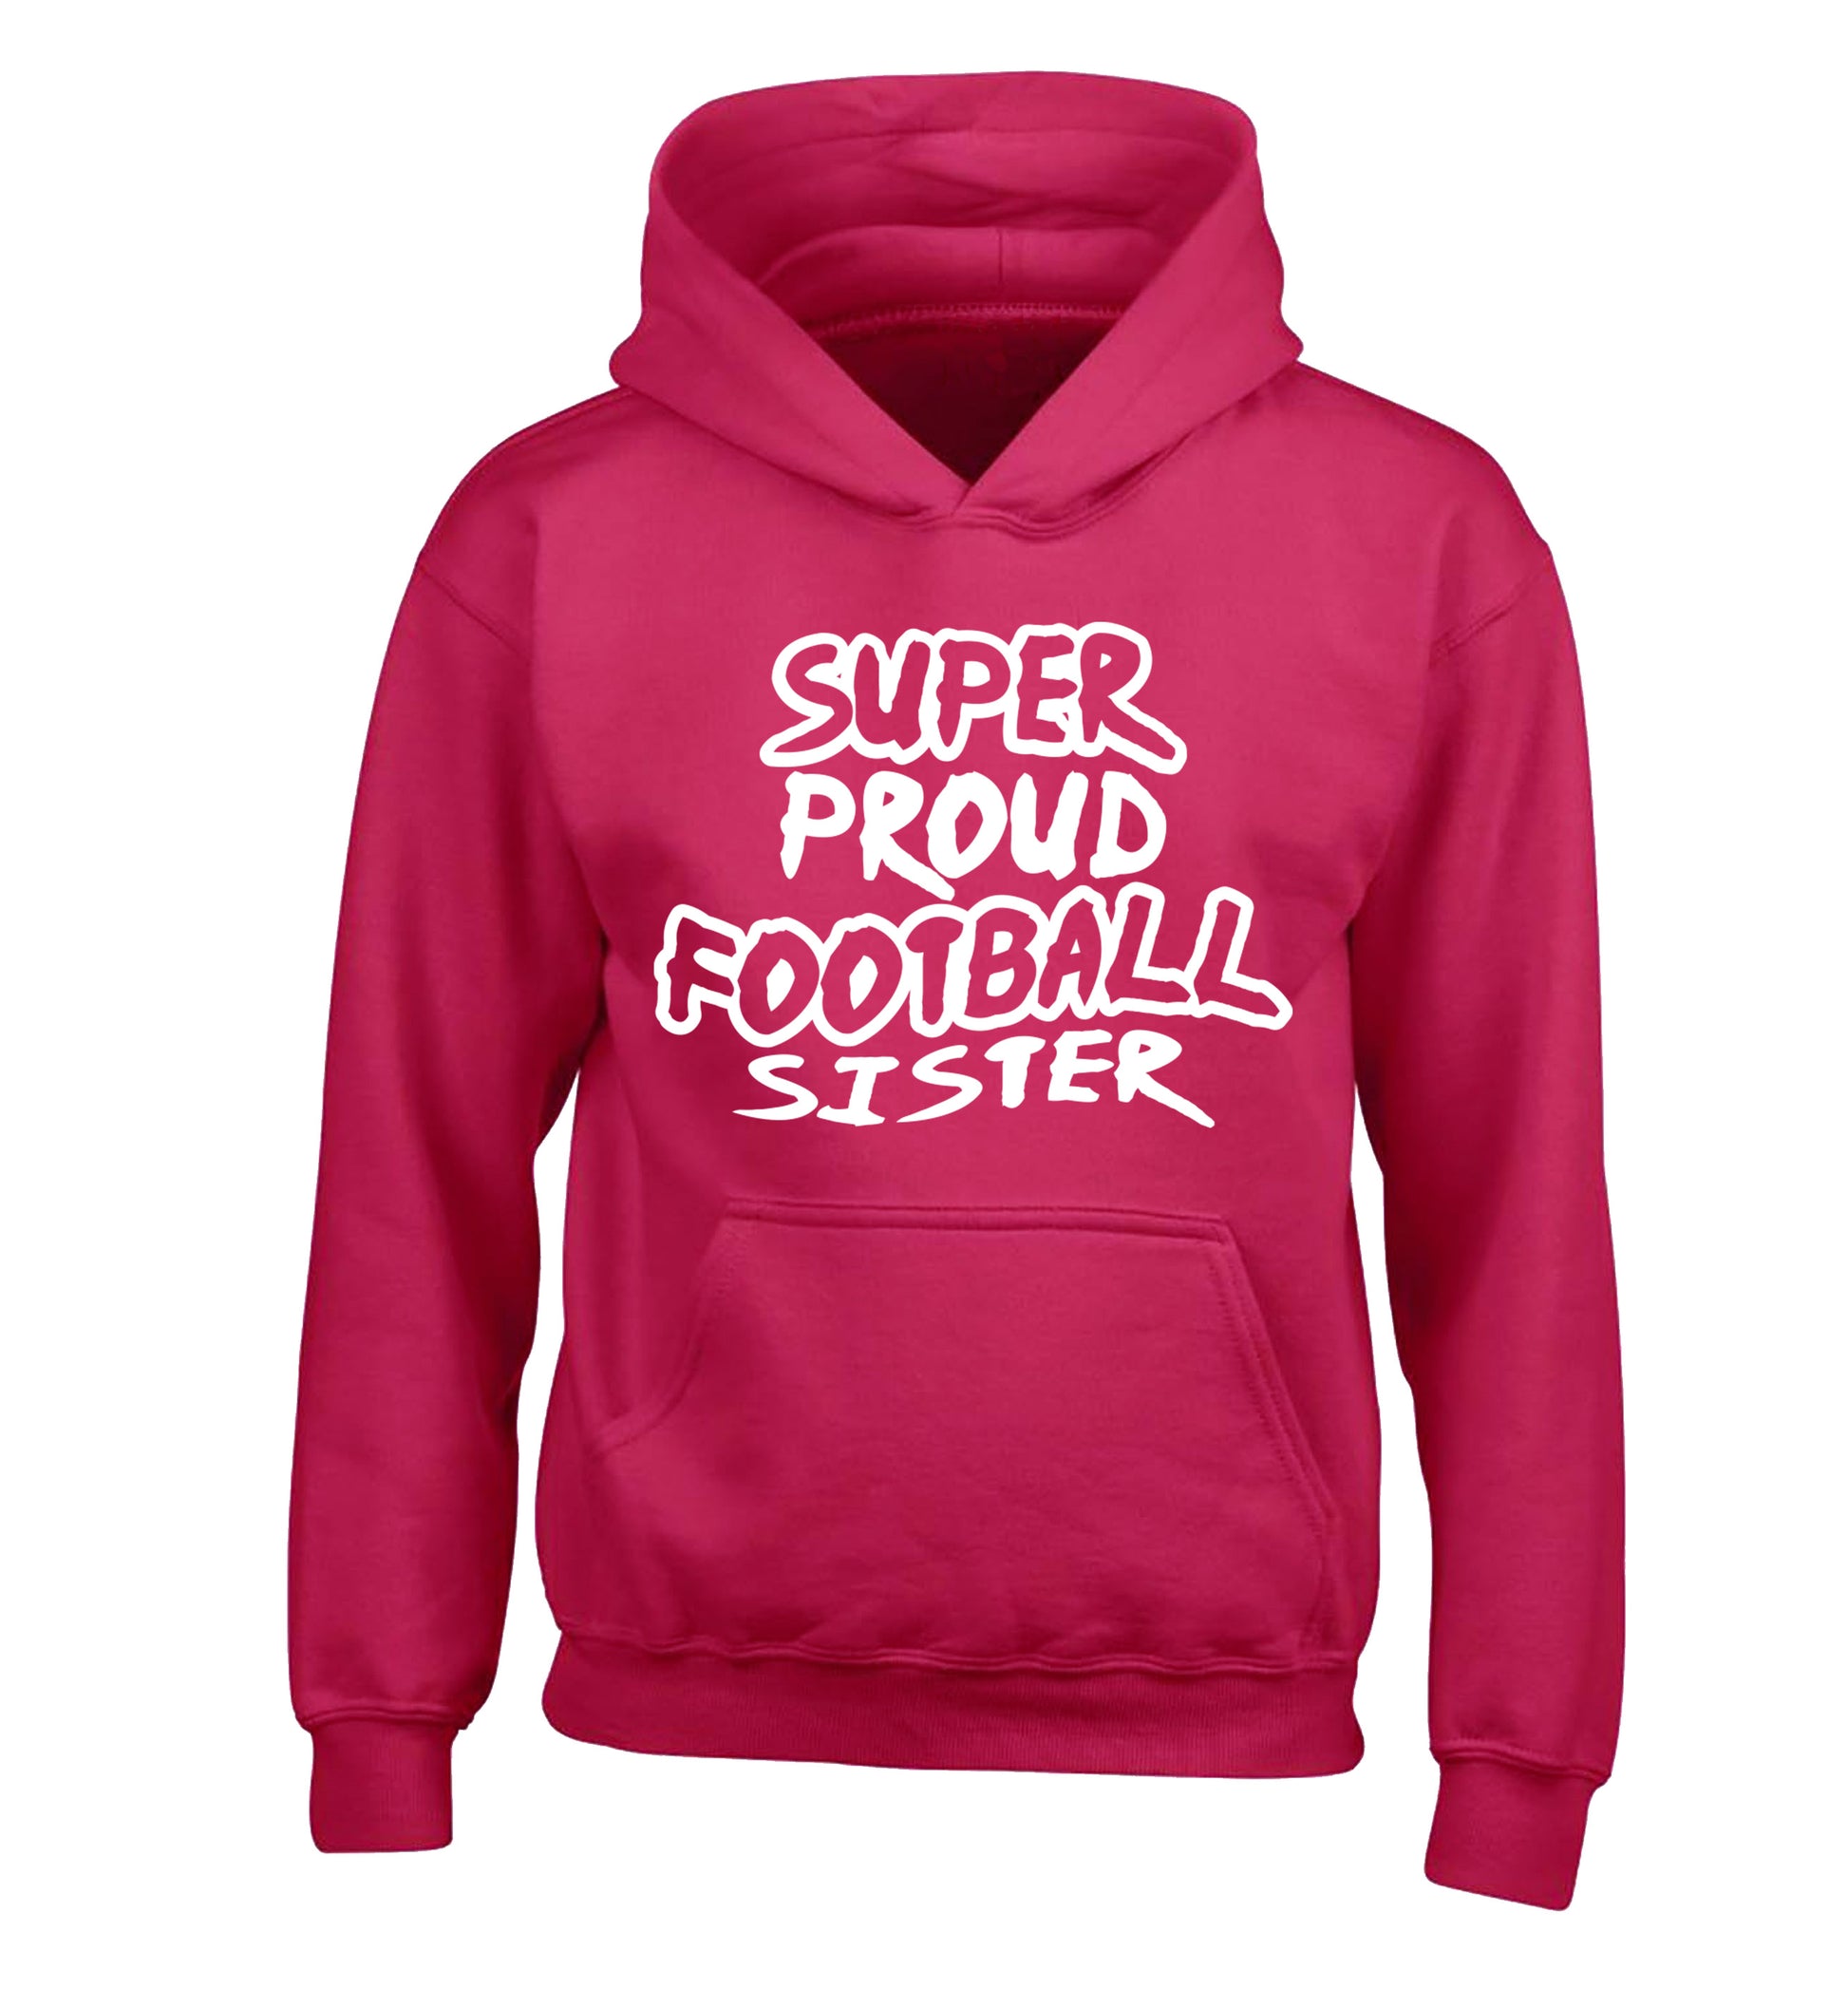 Super proud football sister children's pink hoodie 12-14 Years